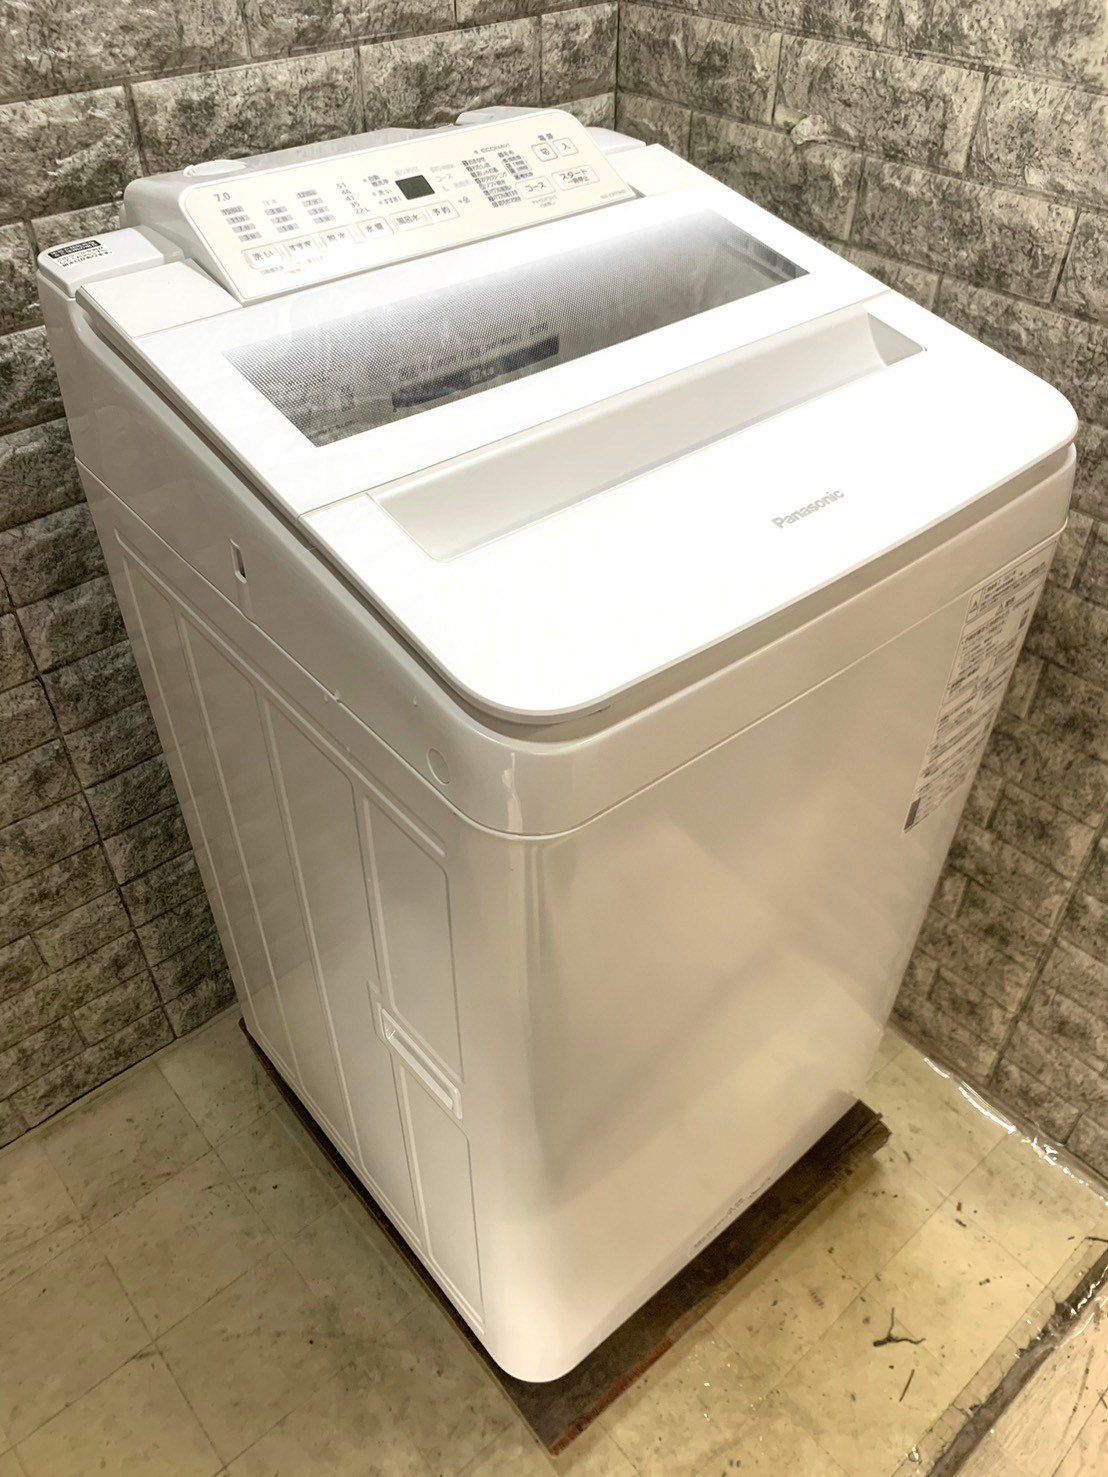 販売品SHARP 全自動洗濯機 2020年式 ES-T712 7kg 洗濯機